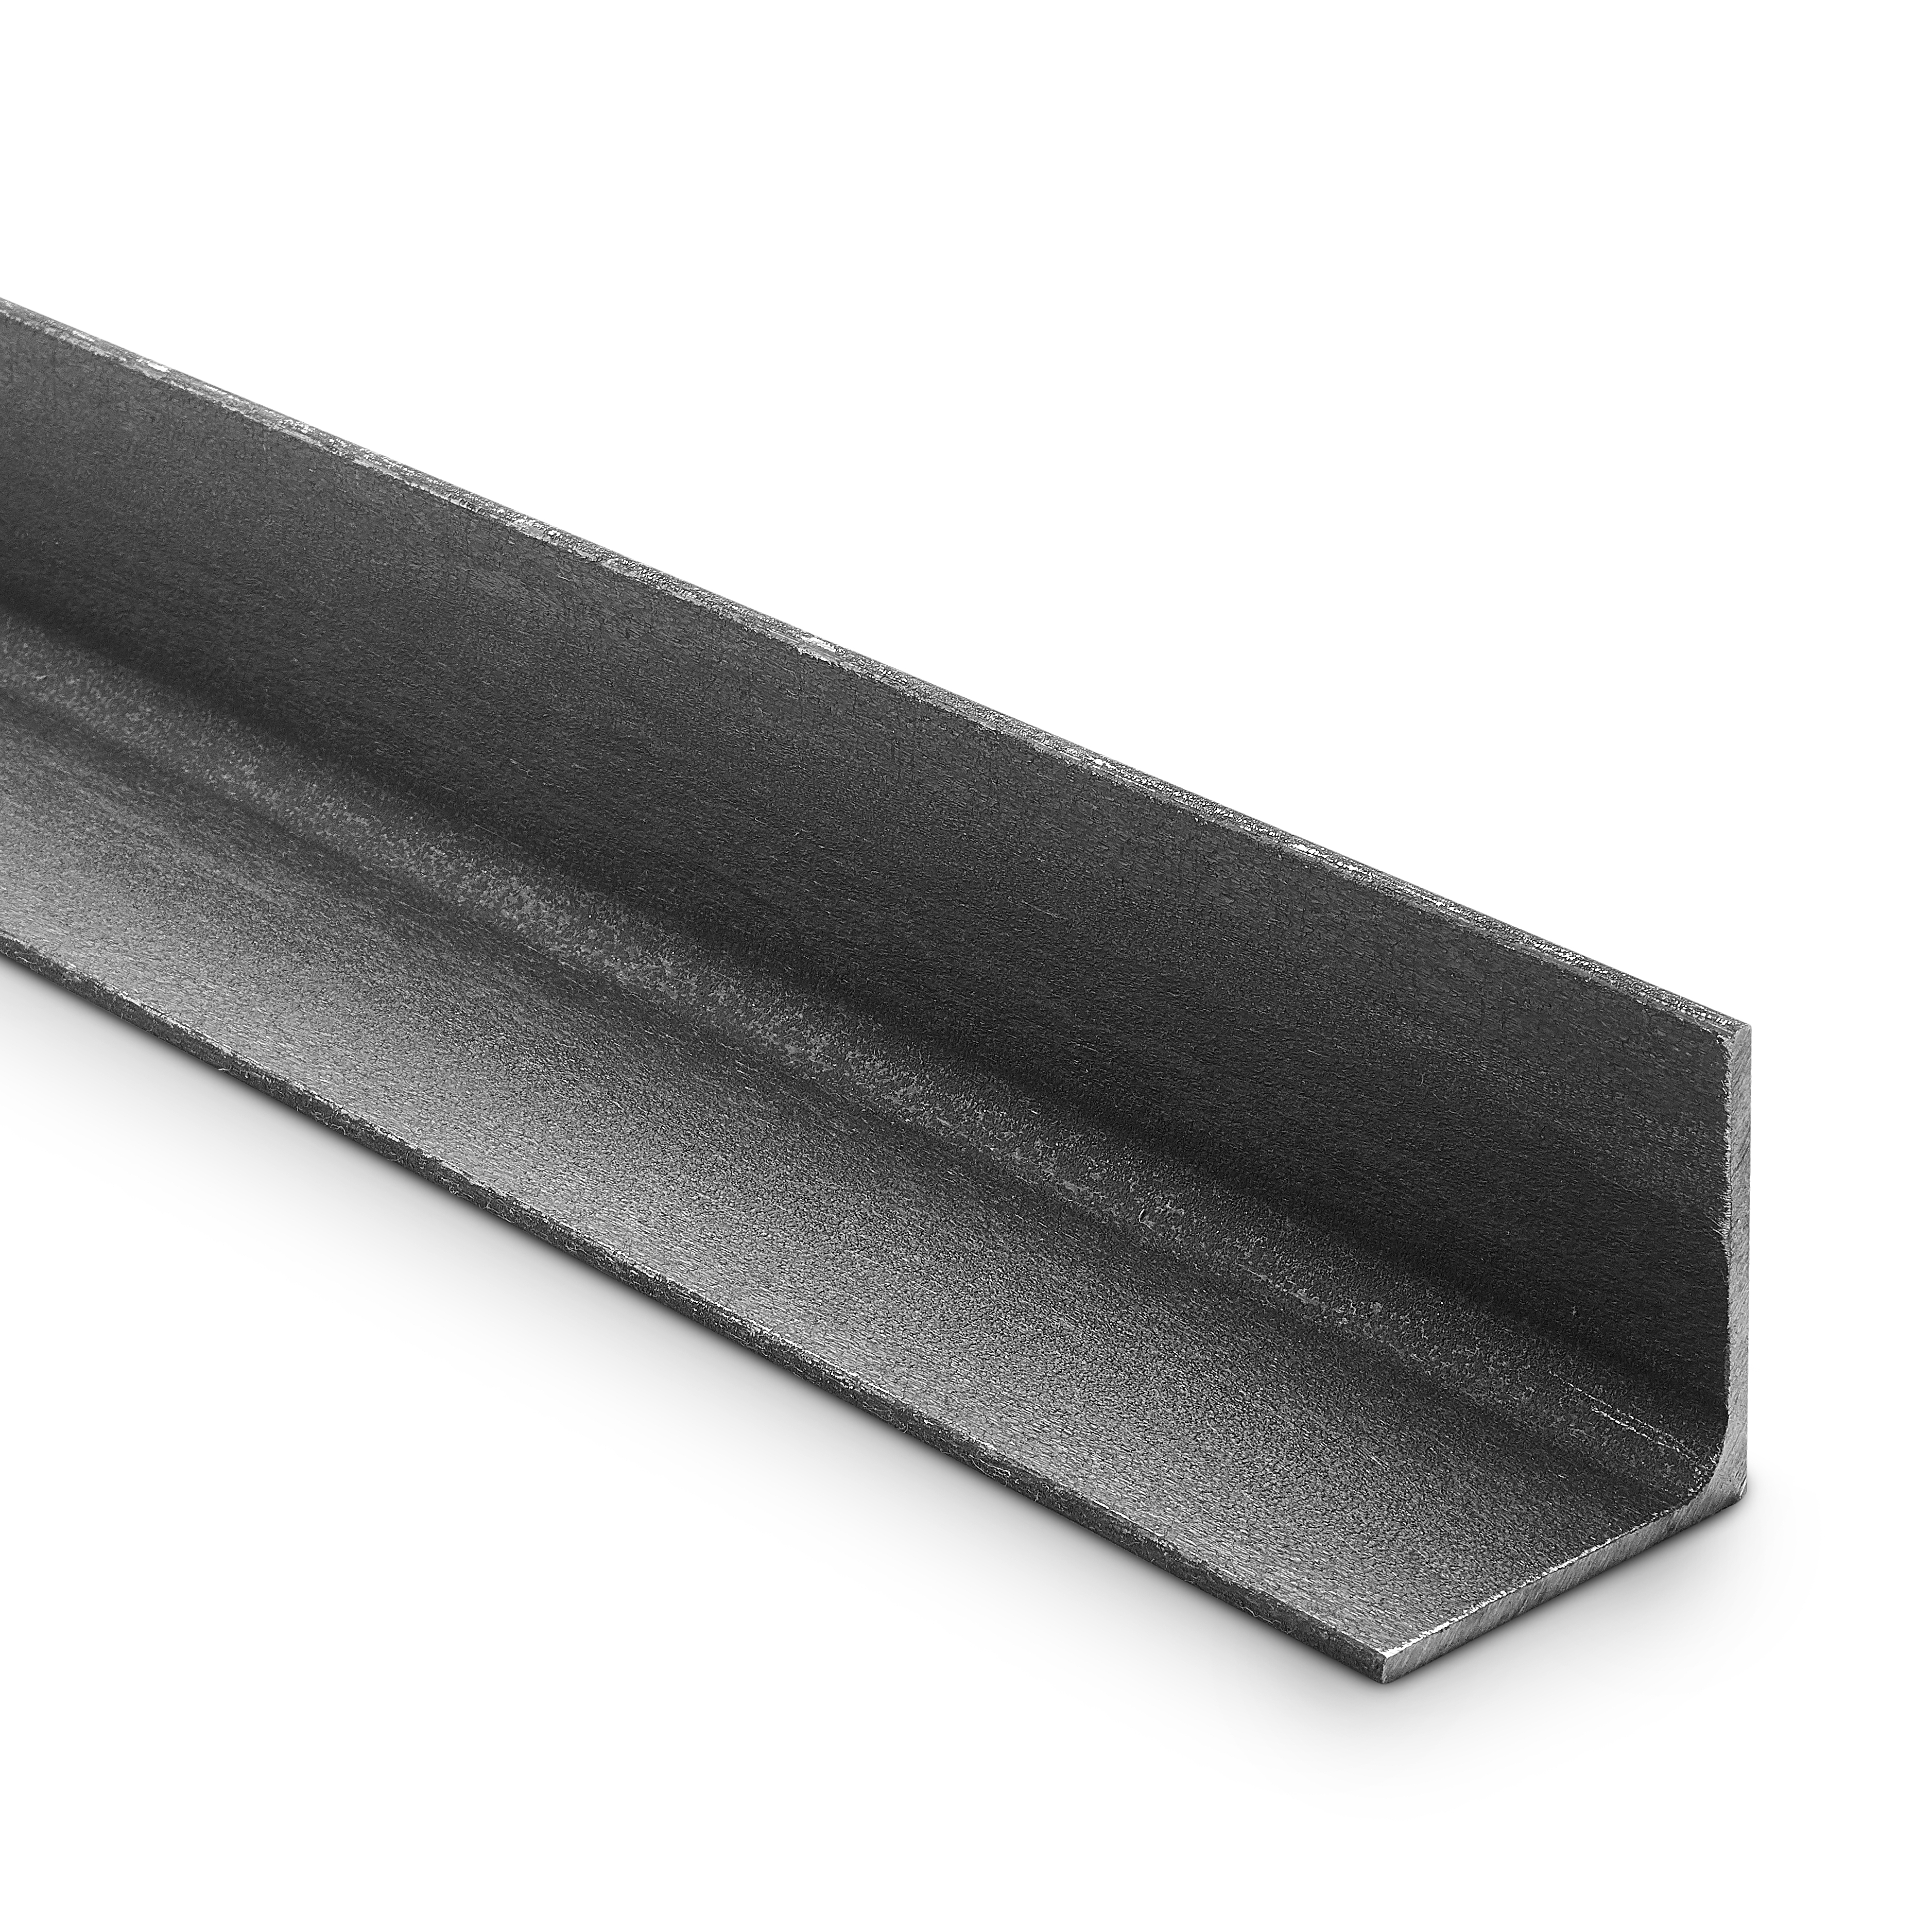 x2 Mtr Lengths Angle Iron MILD STEEL ANGLE Trade Price UK Metal Distributor 